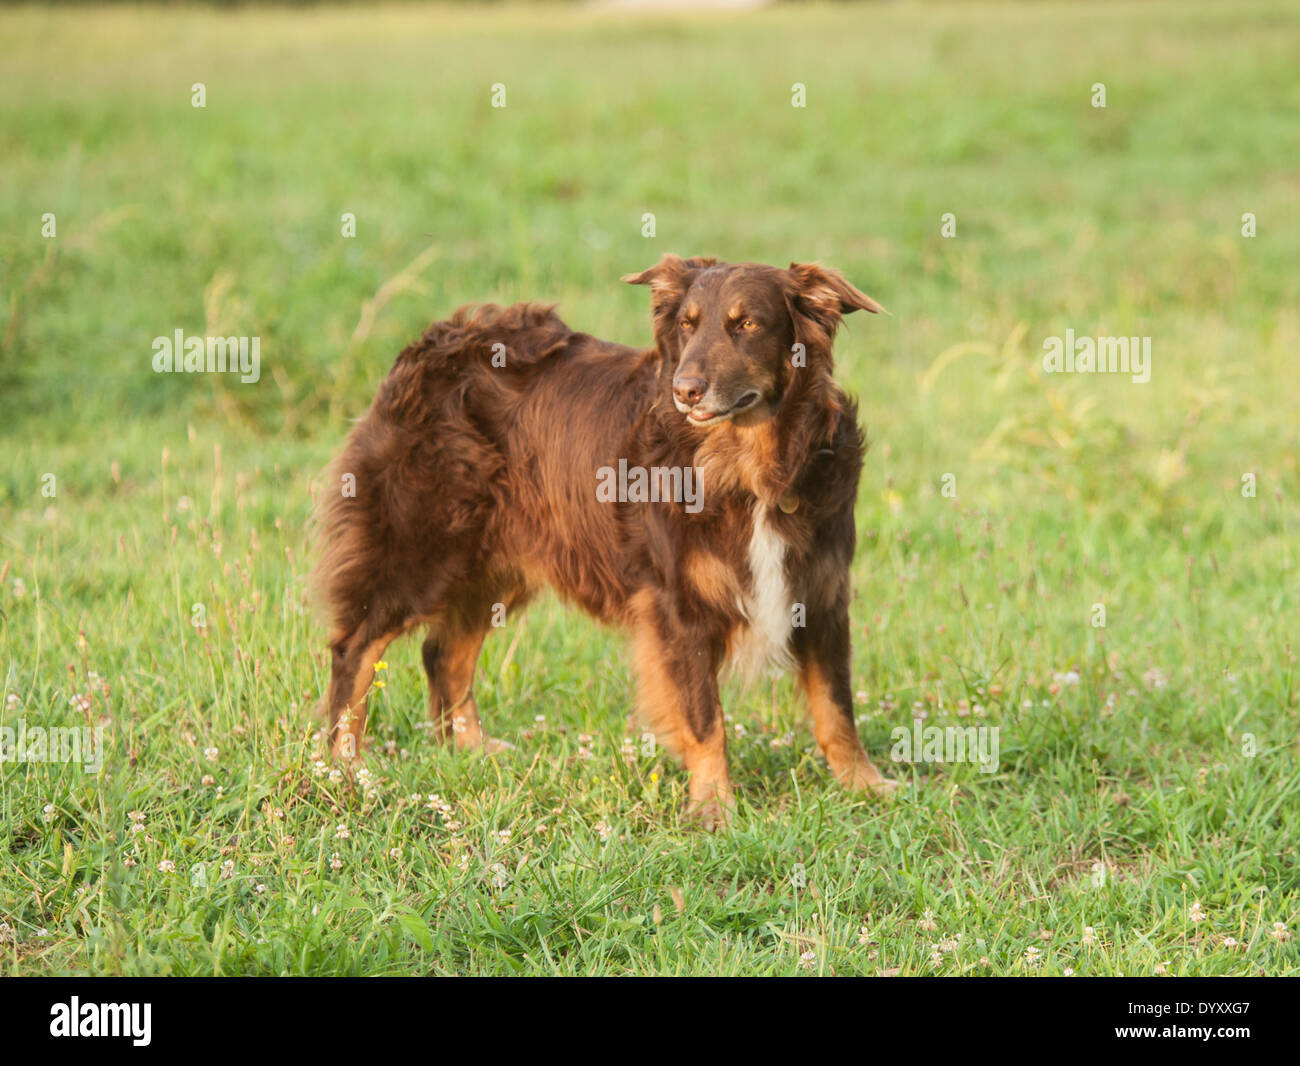 Australian Shepherd dog in field of grass Stock Photo